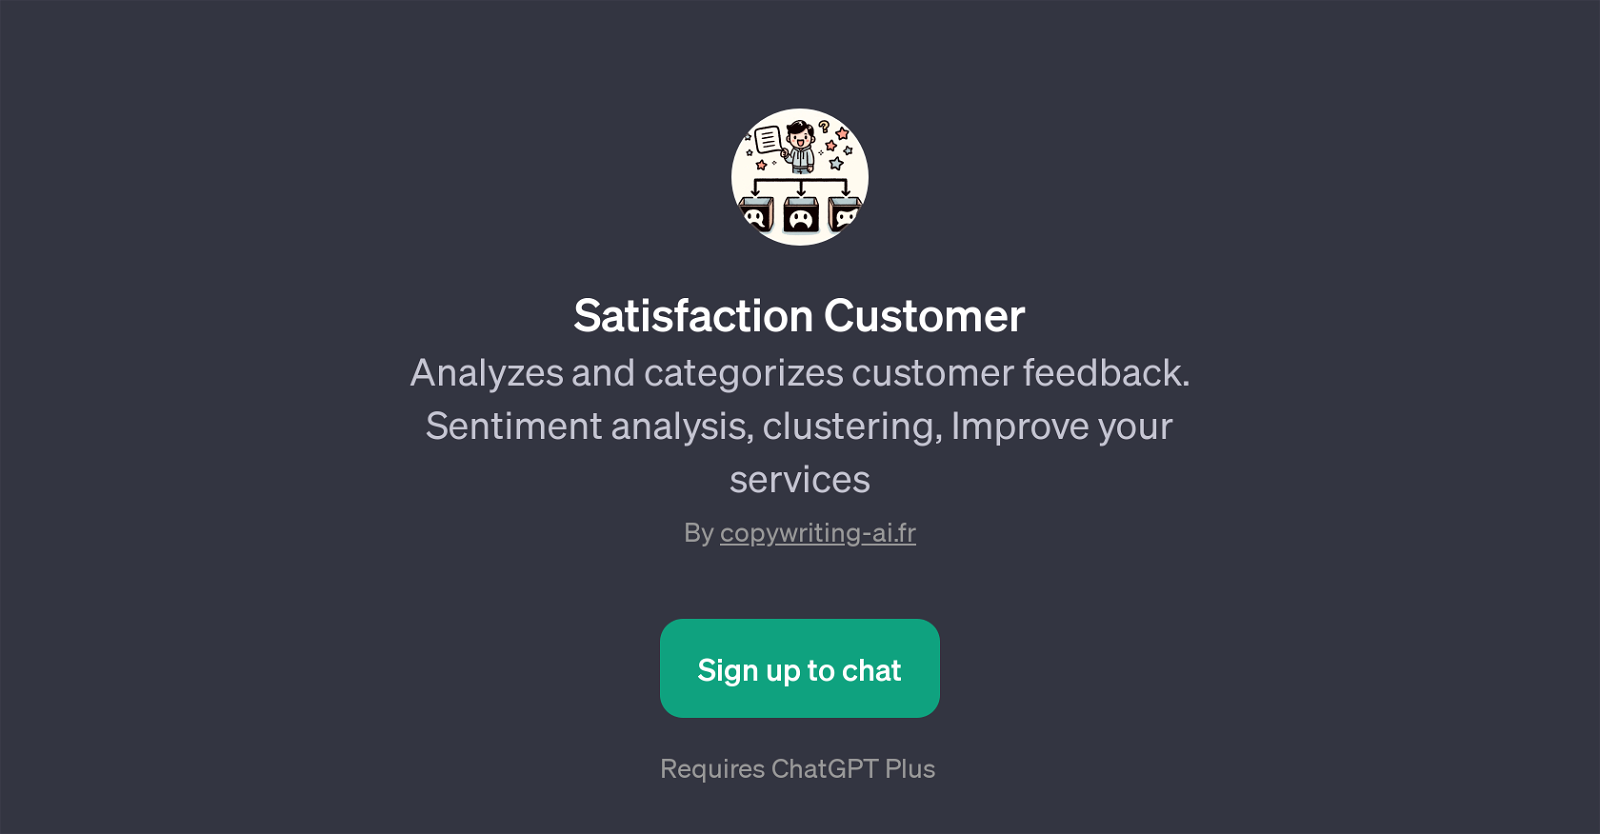 Satisfaction Customer website